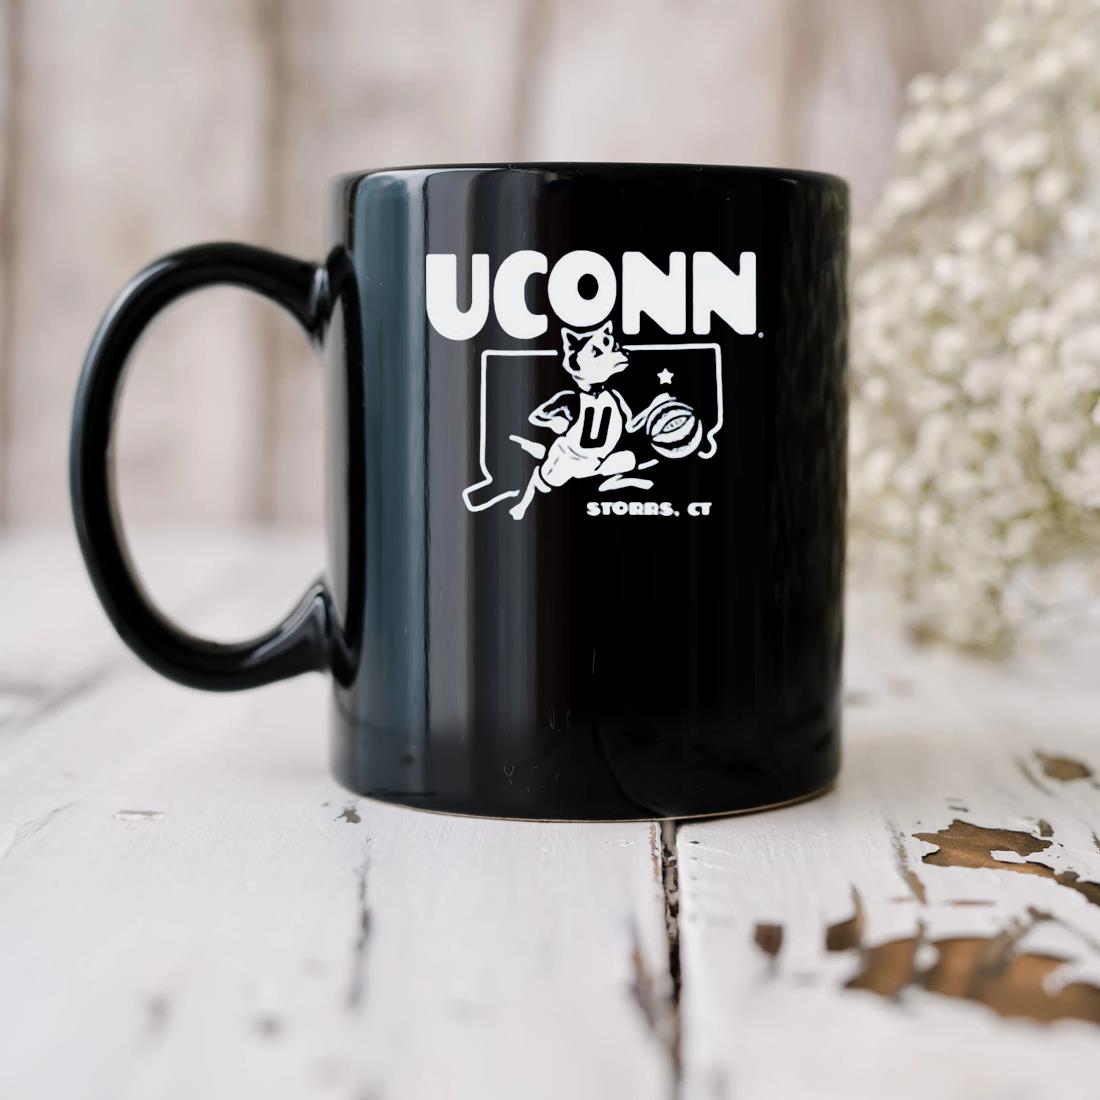 Uconn Hoops Logo Storrs Ct Mug